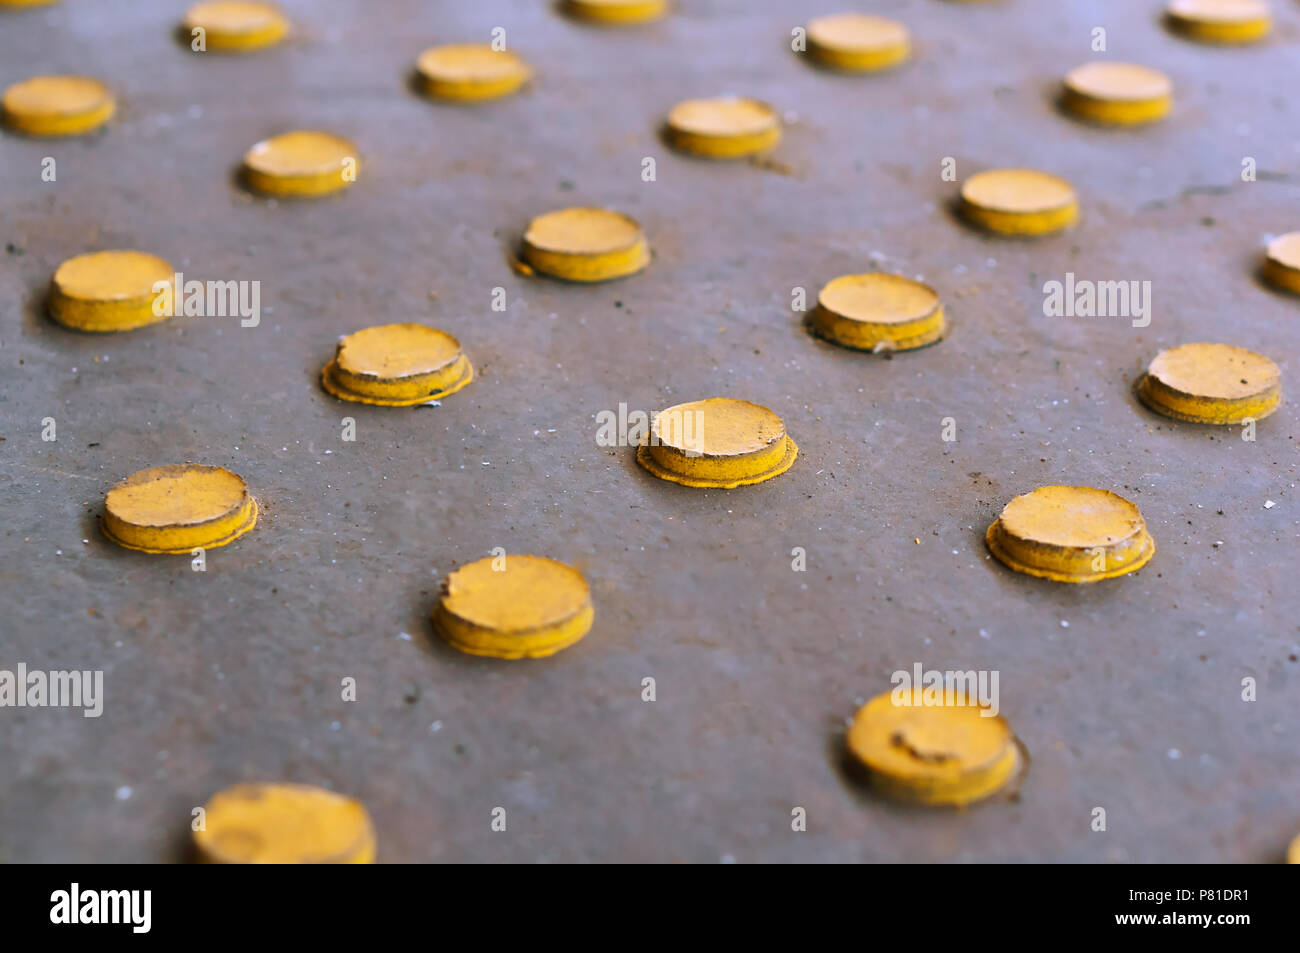 Botones amarillos sobre un fondo gris, círculos amarillos dispuestas en filas. Foto de stock